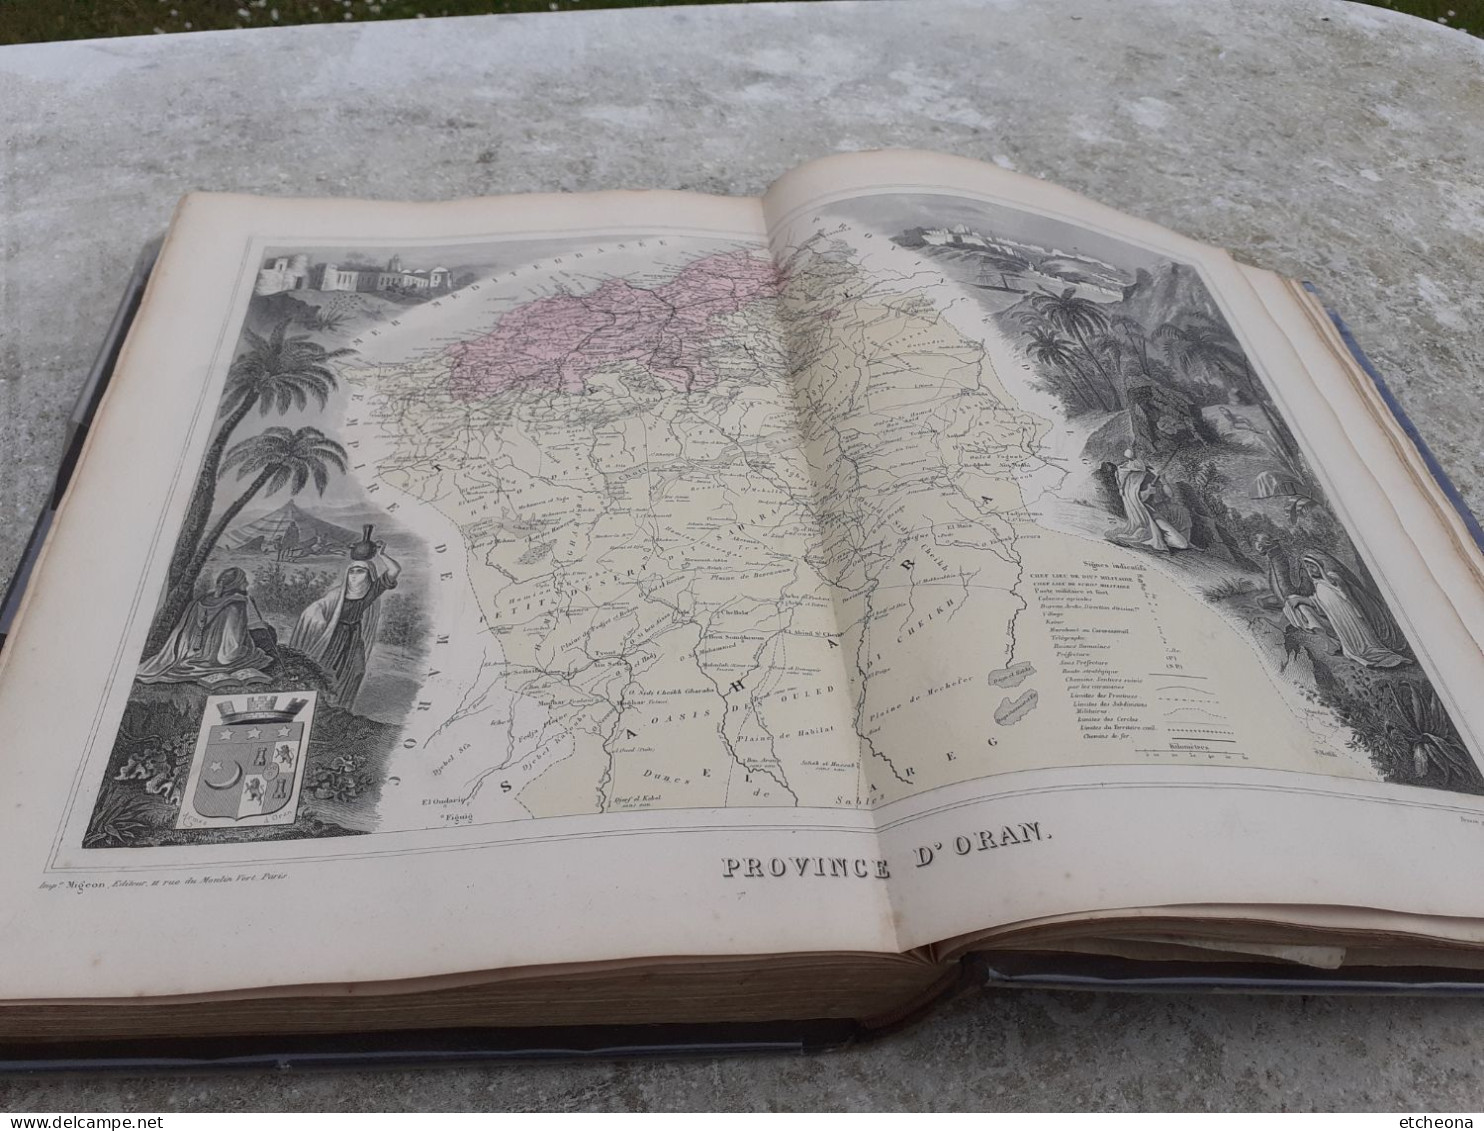 La France et ses colonies Atlas Migeon Illustré avec 105 cartes, ponts et Chaussées, dépot de la Guerre et de la Marine